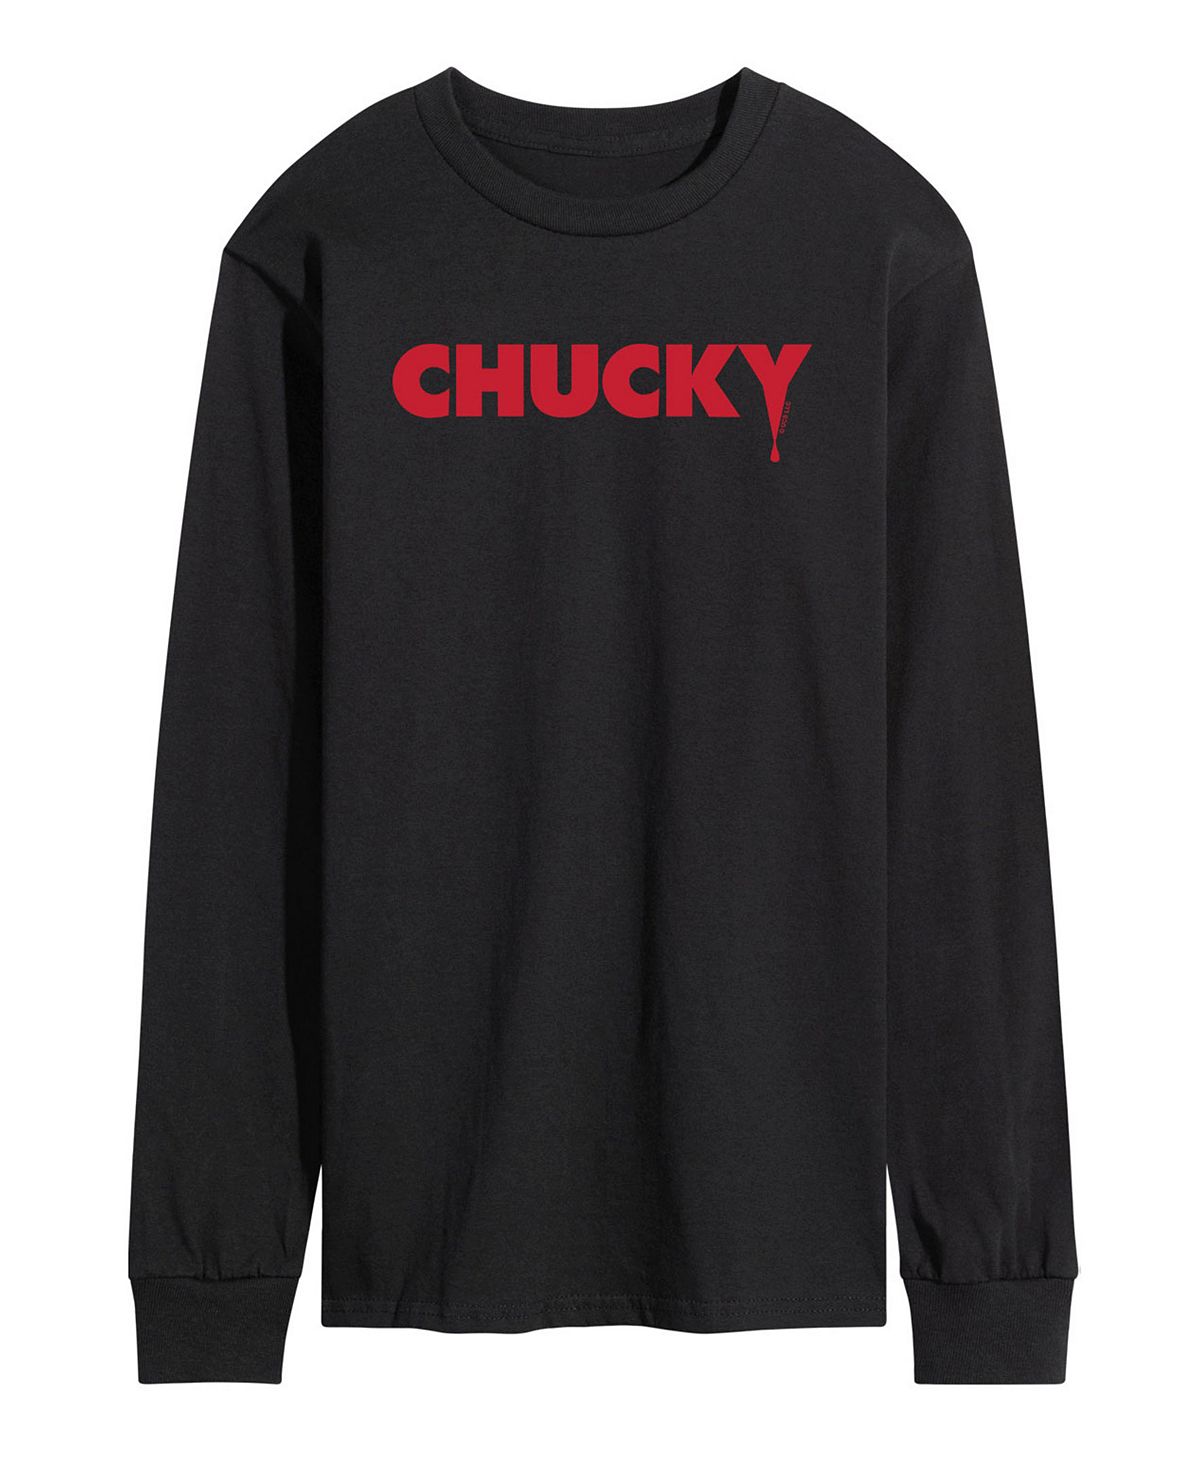 Мужская футболка с длинным рукавом и логотипом chucky AIRWAVES, черный мужская футболка chucky here’s chucky airwaves белый